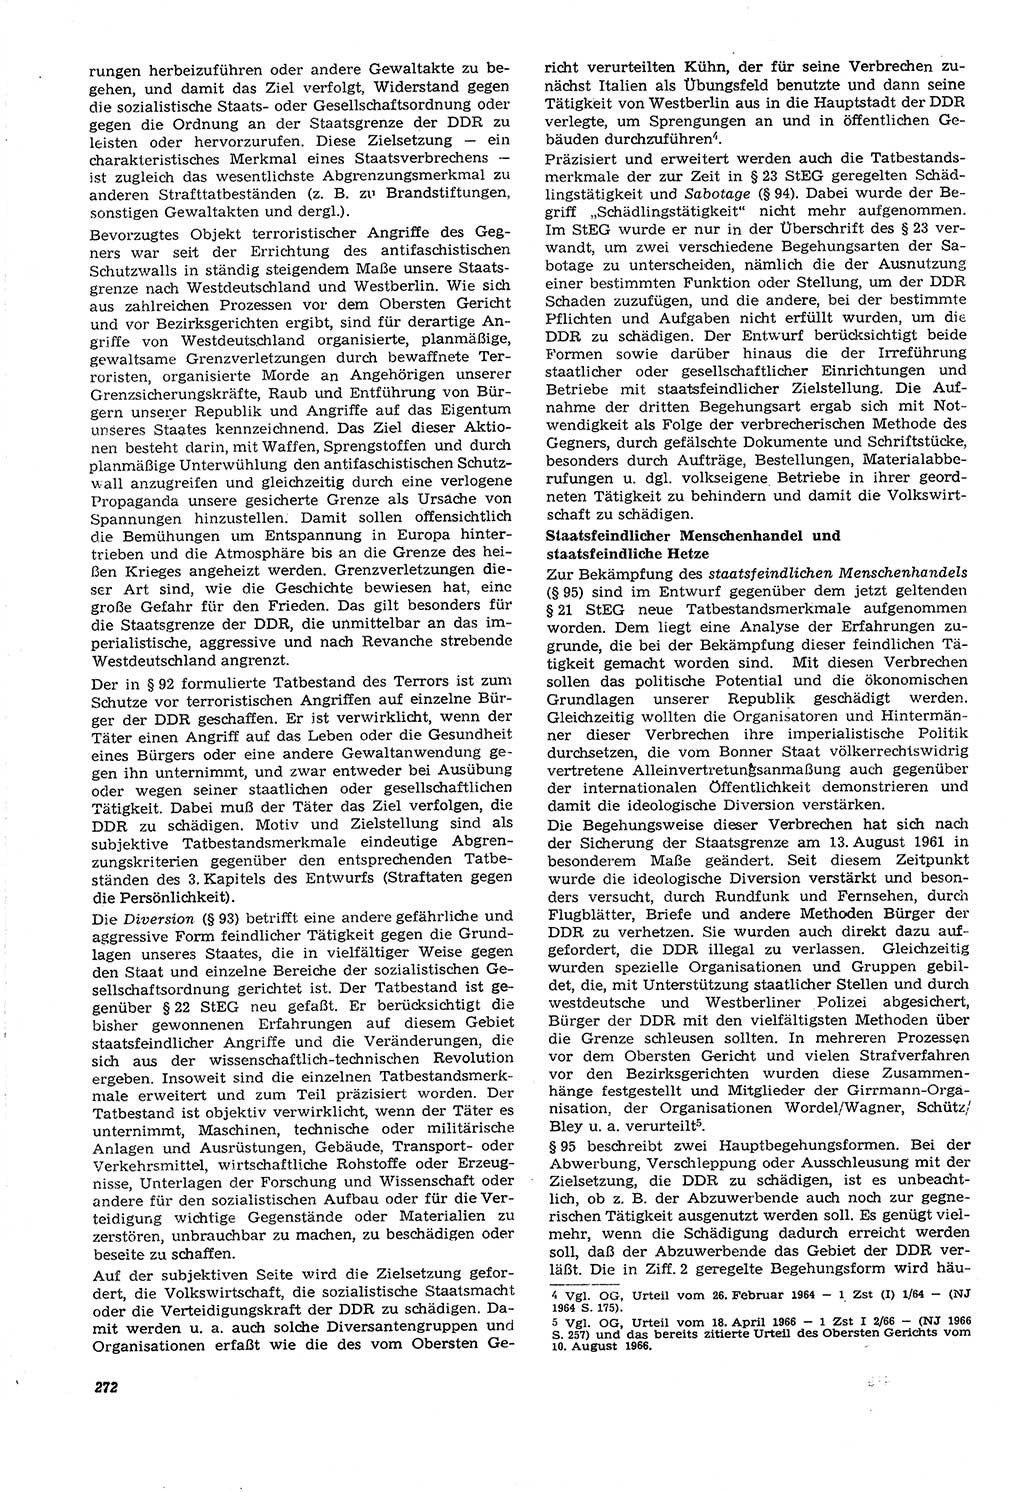 Neue Justiz (NJ), Zeitschrift für Recht und Rechtswissenschaft [Deutsche Demokratische Republik (DDR)], 21. Jahrgang 1967, Seite 272 (NJ DDR 1967, S. 272)